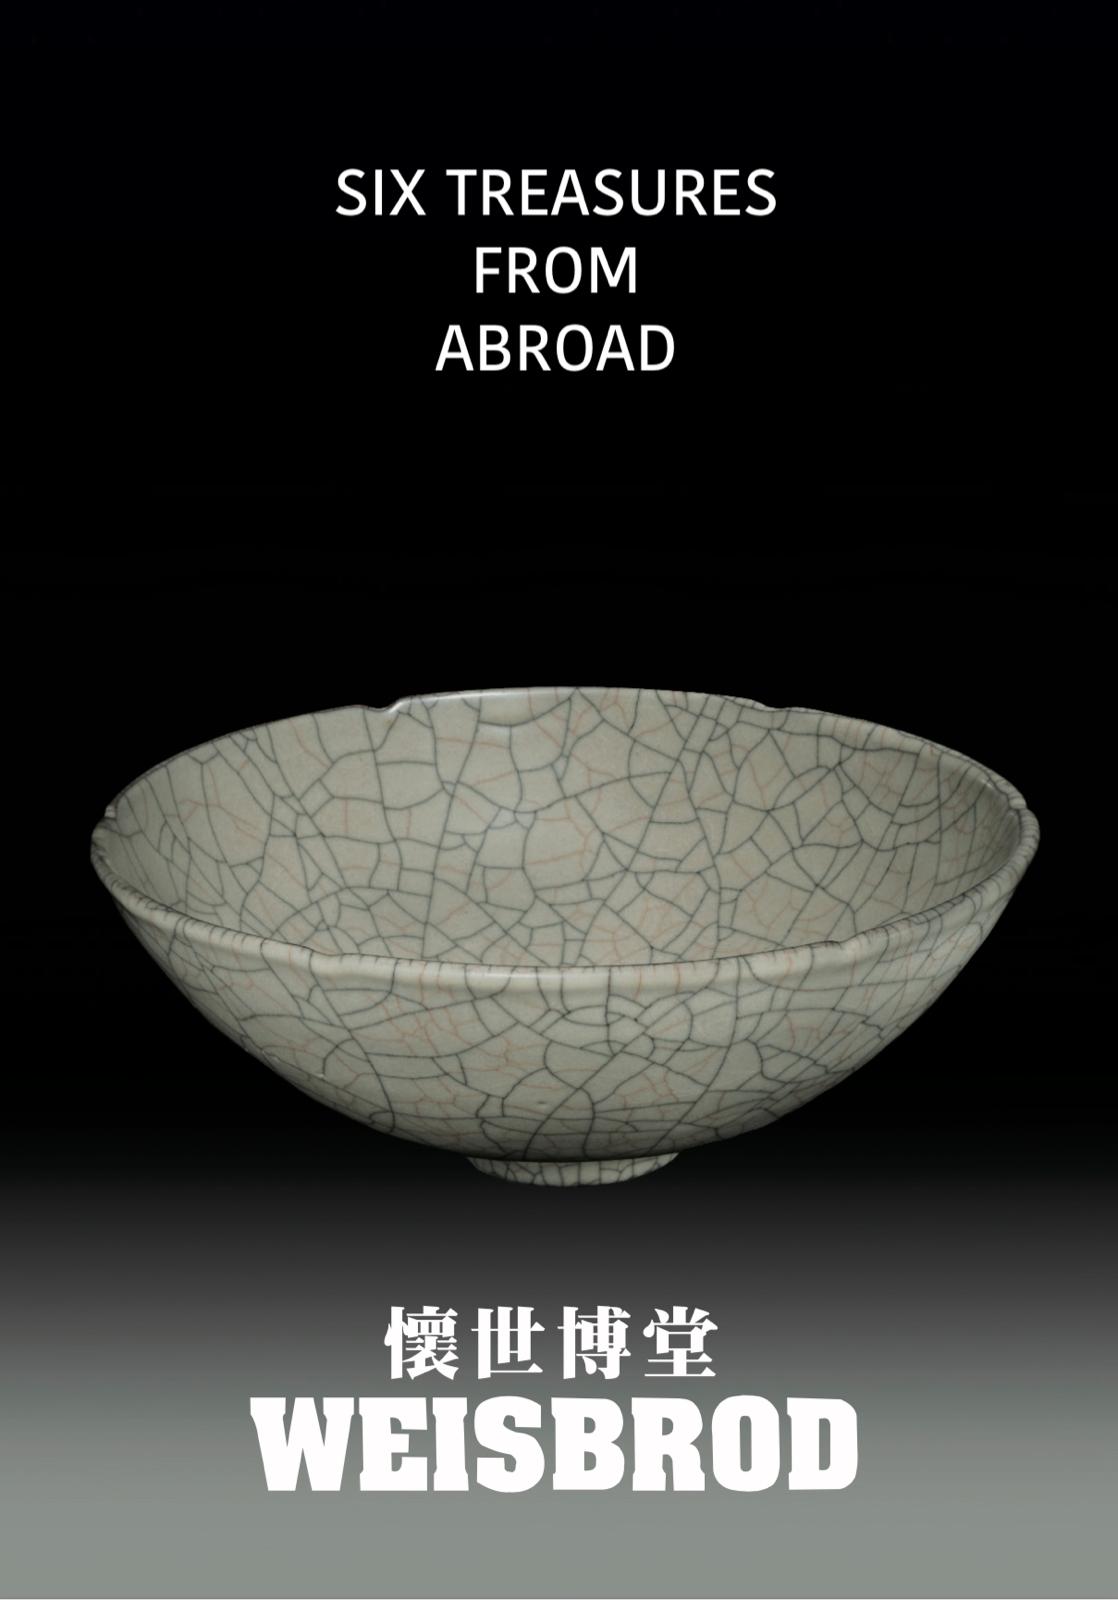 中国古董与古代艺术品| Weisbrod – Weisbrod Collection